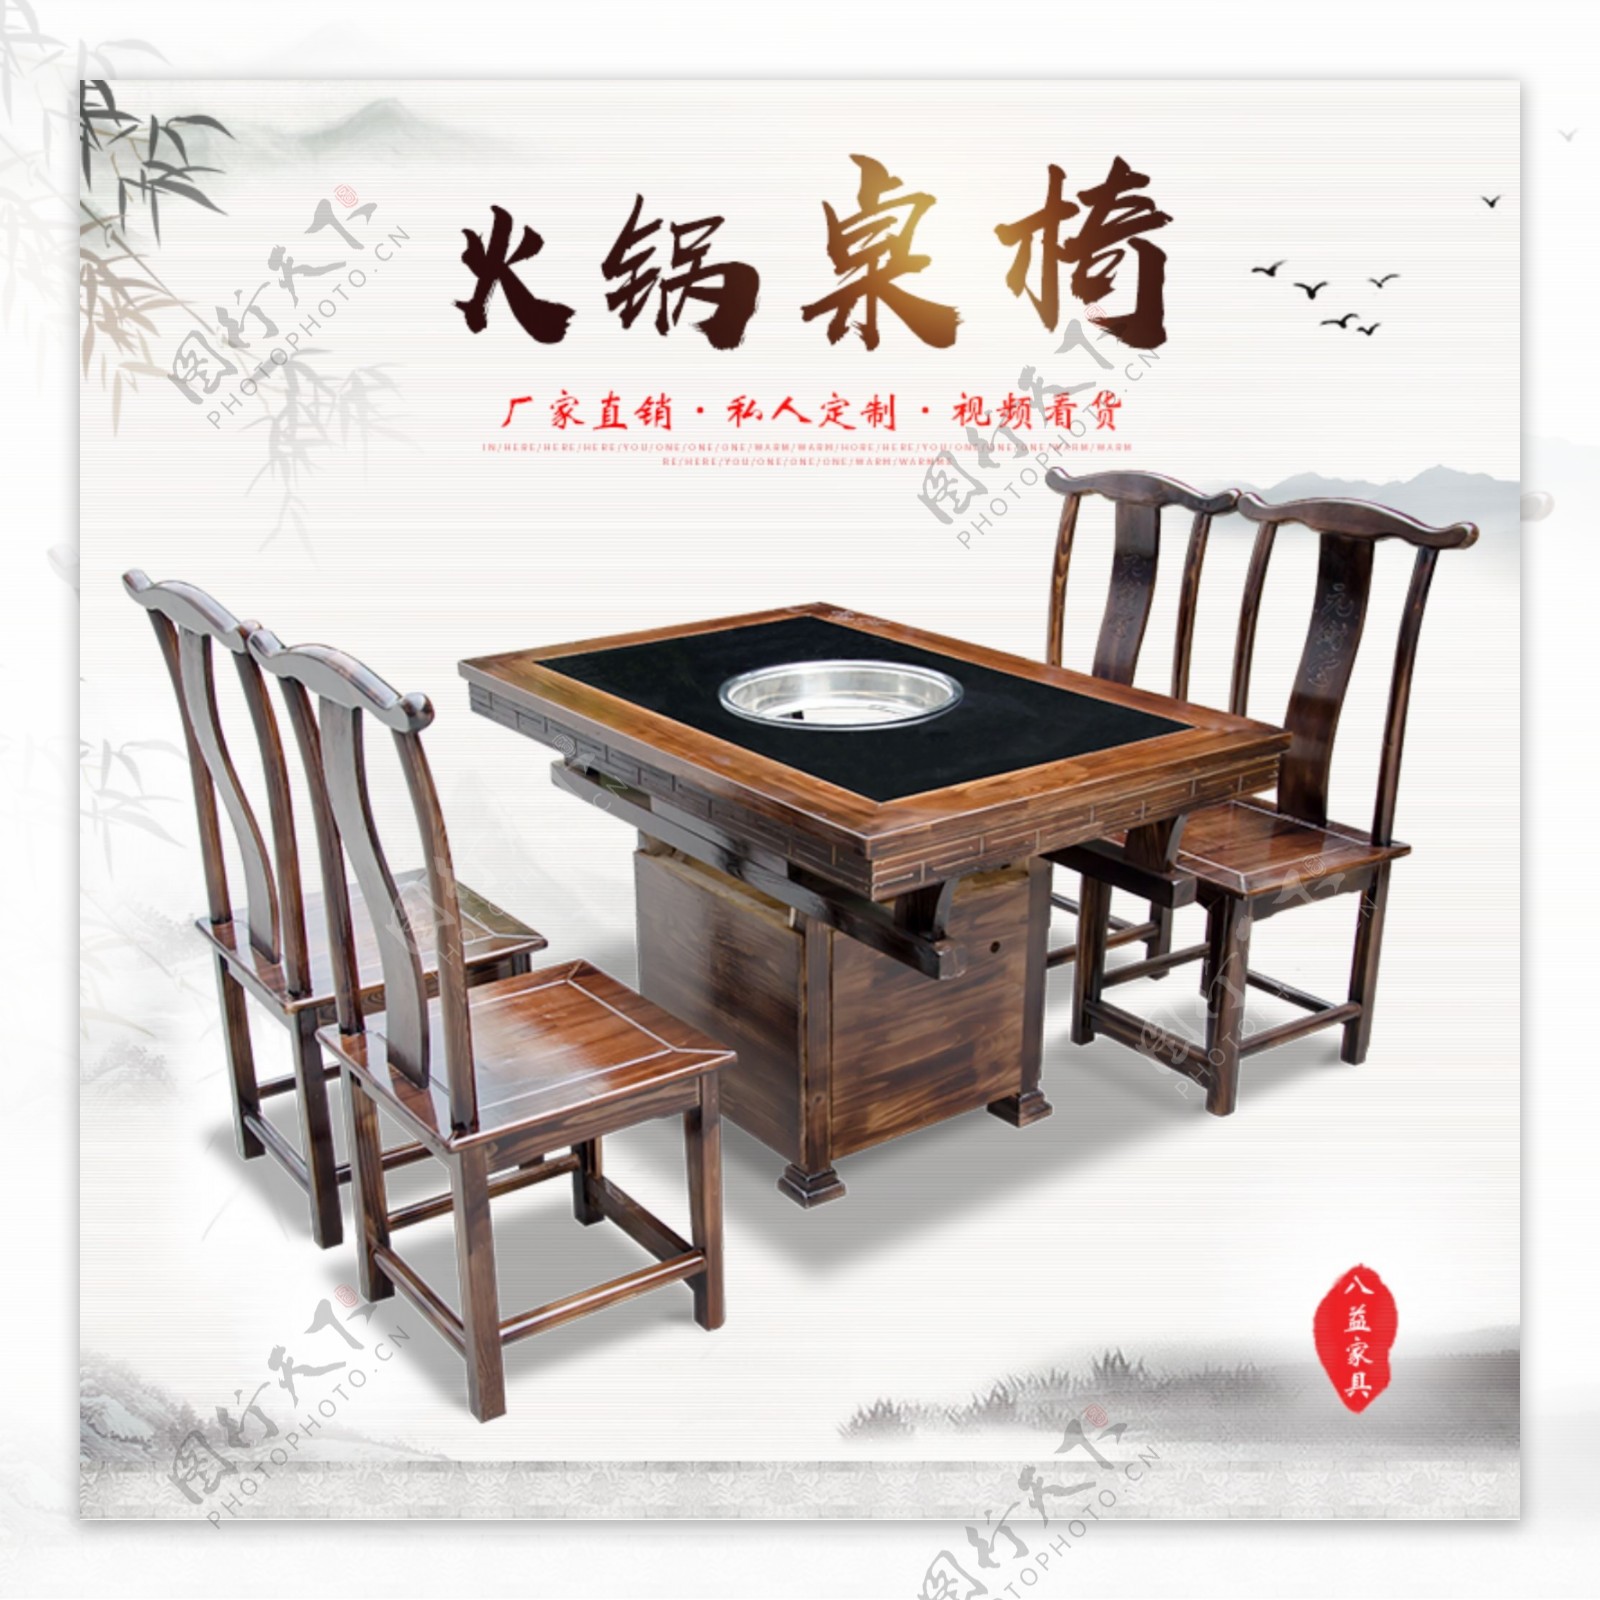 中式复古实木大理石火锅桌椅组合主图水墨风